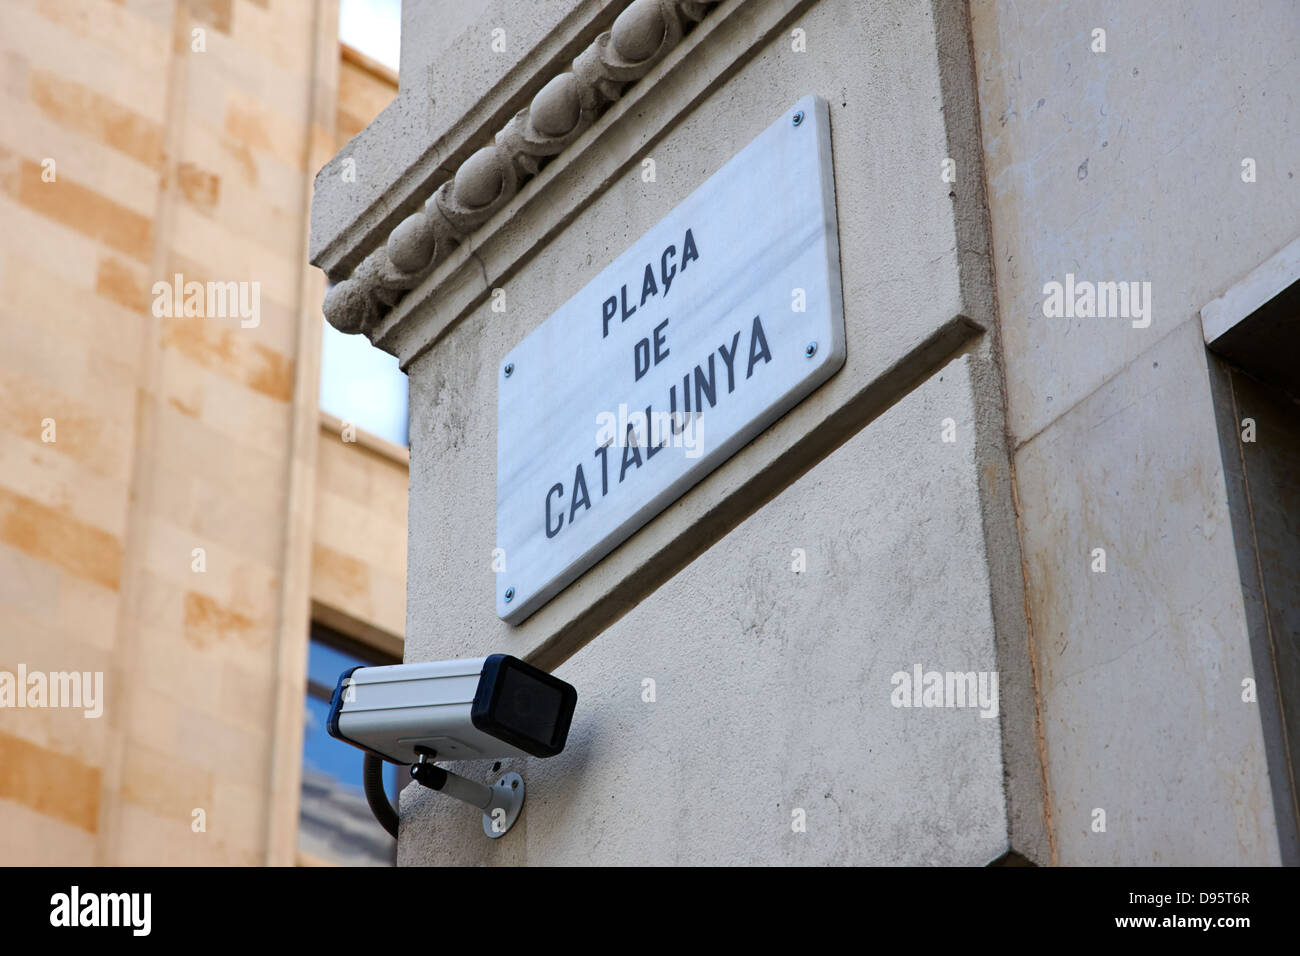 Des caméras de sécurité sur place de Catalogne barcelone catalogne espagne Banque D'Images